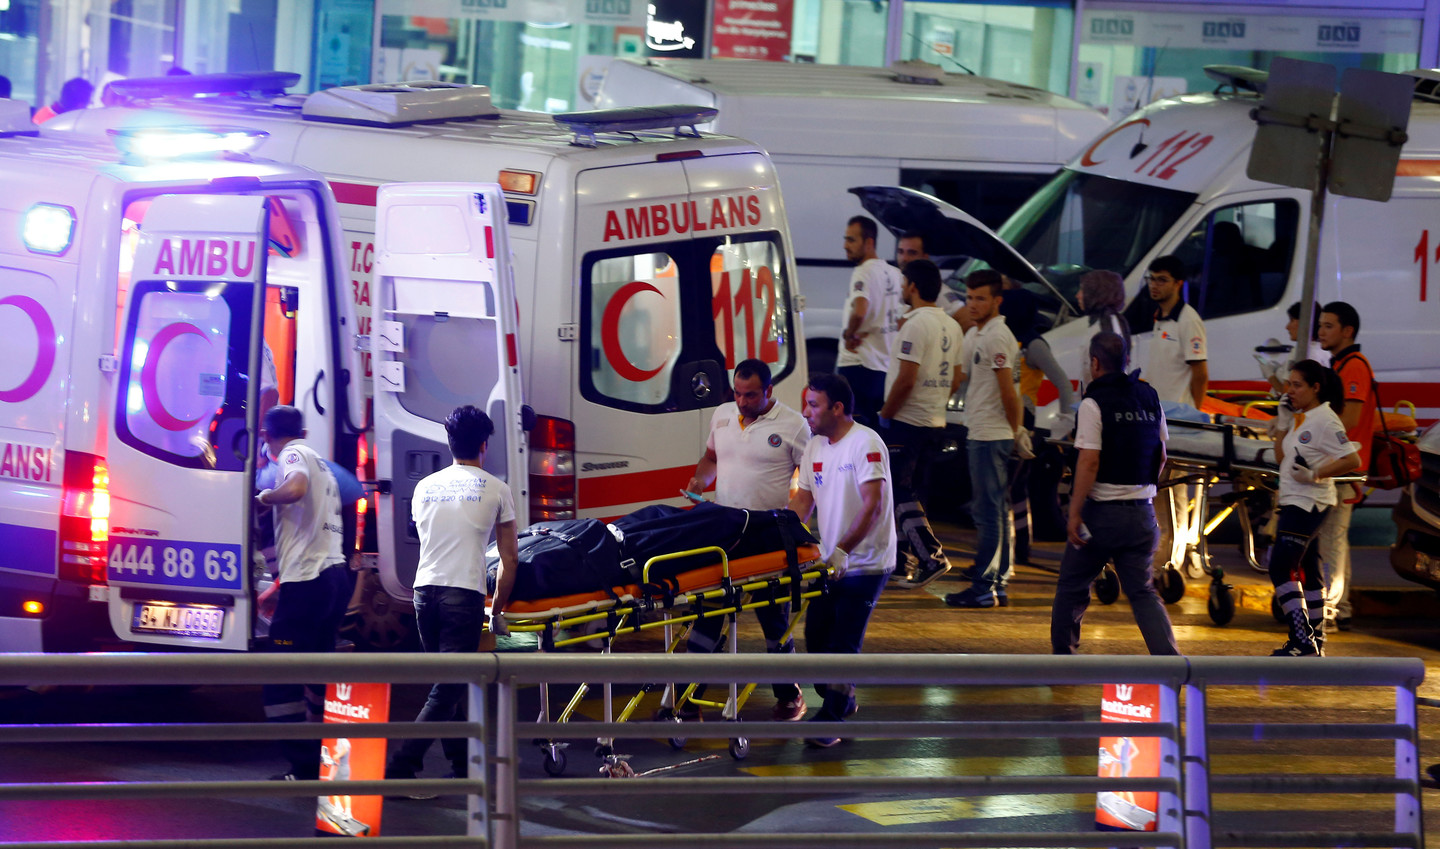 Власти Грузии выразили соболезнования в связи с произошедшими терактами в аэропорту Ататюрка.